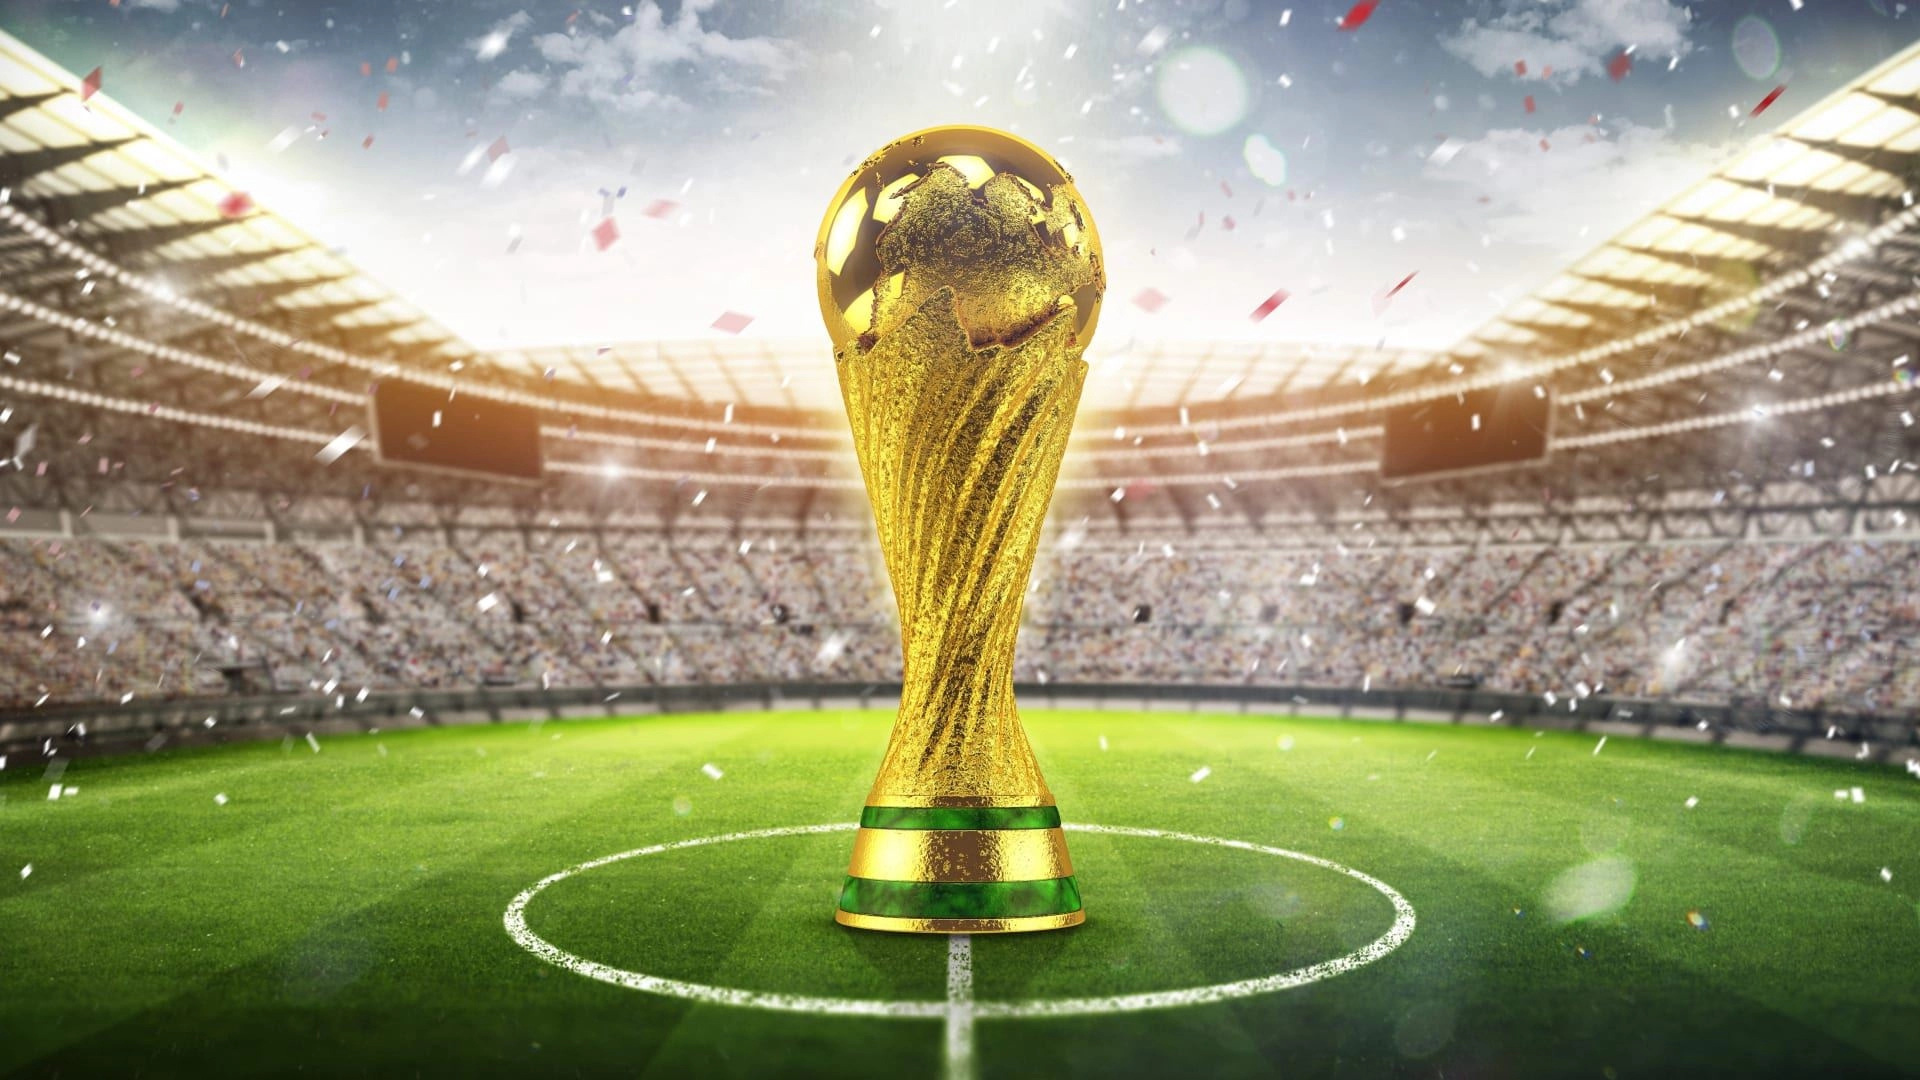 هل كأس العالم من الذهب وكم وزنه